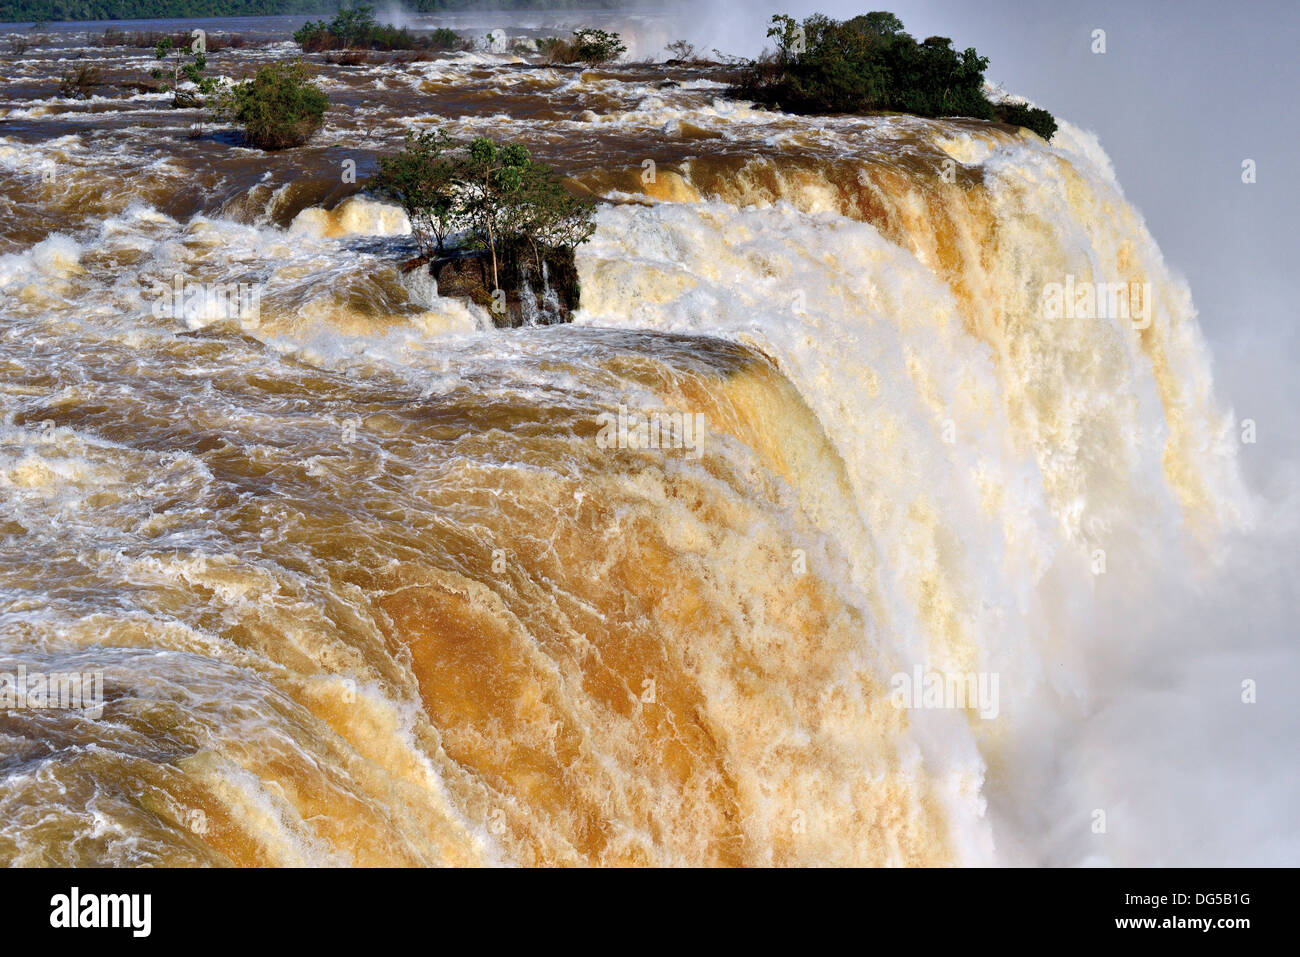 Brésil, National Park : Iguassu Iguassu Falls avec des résultats impressionnants, les niveaux d'eau après de fortes pluies Banque D'Images